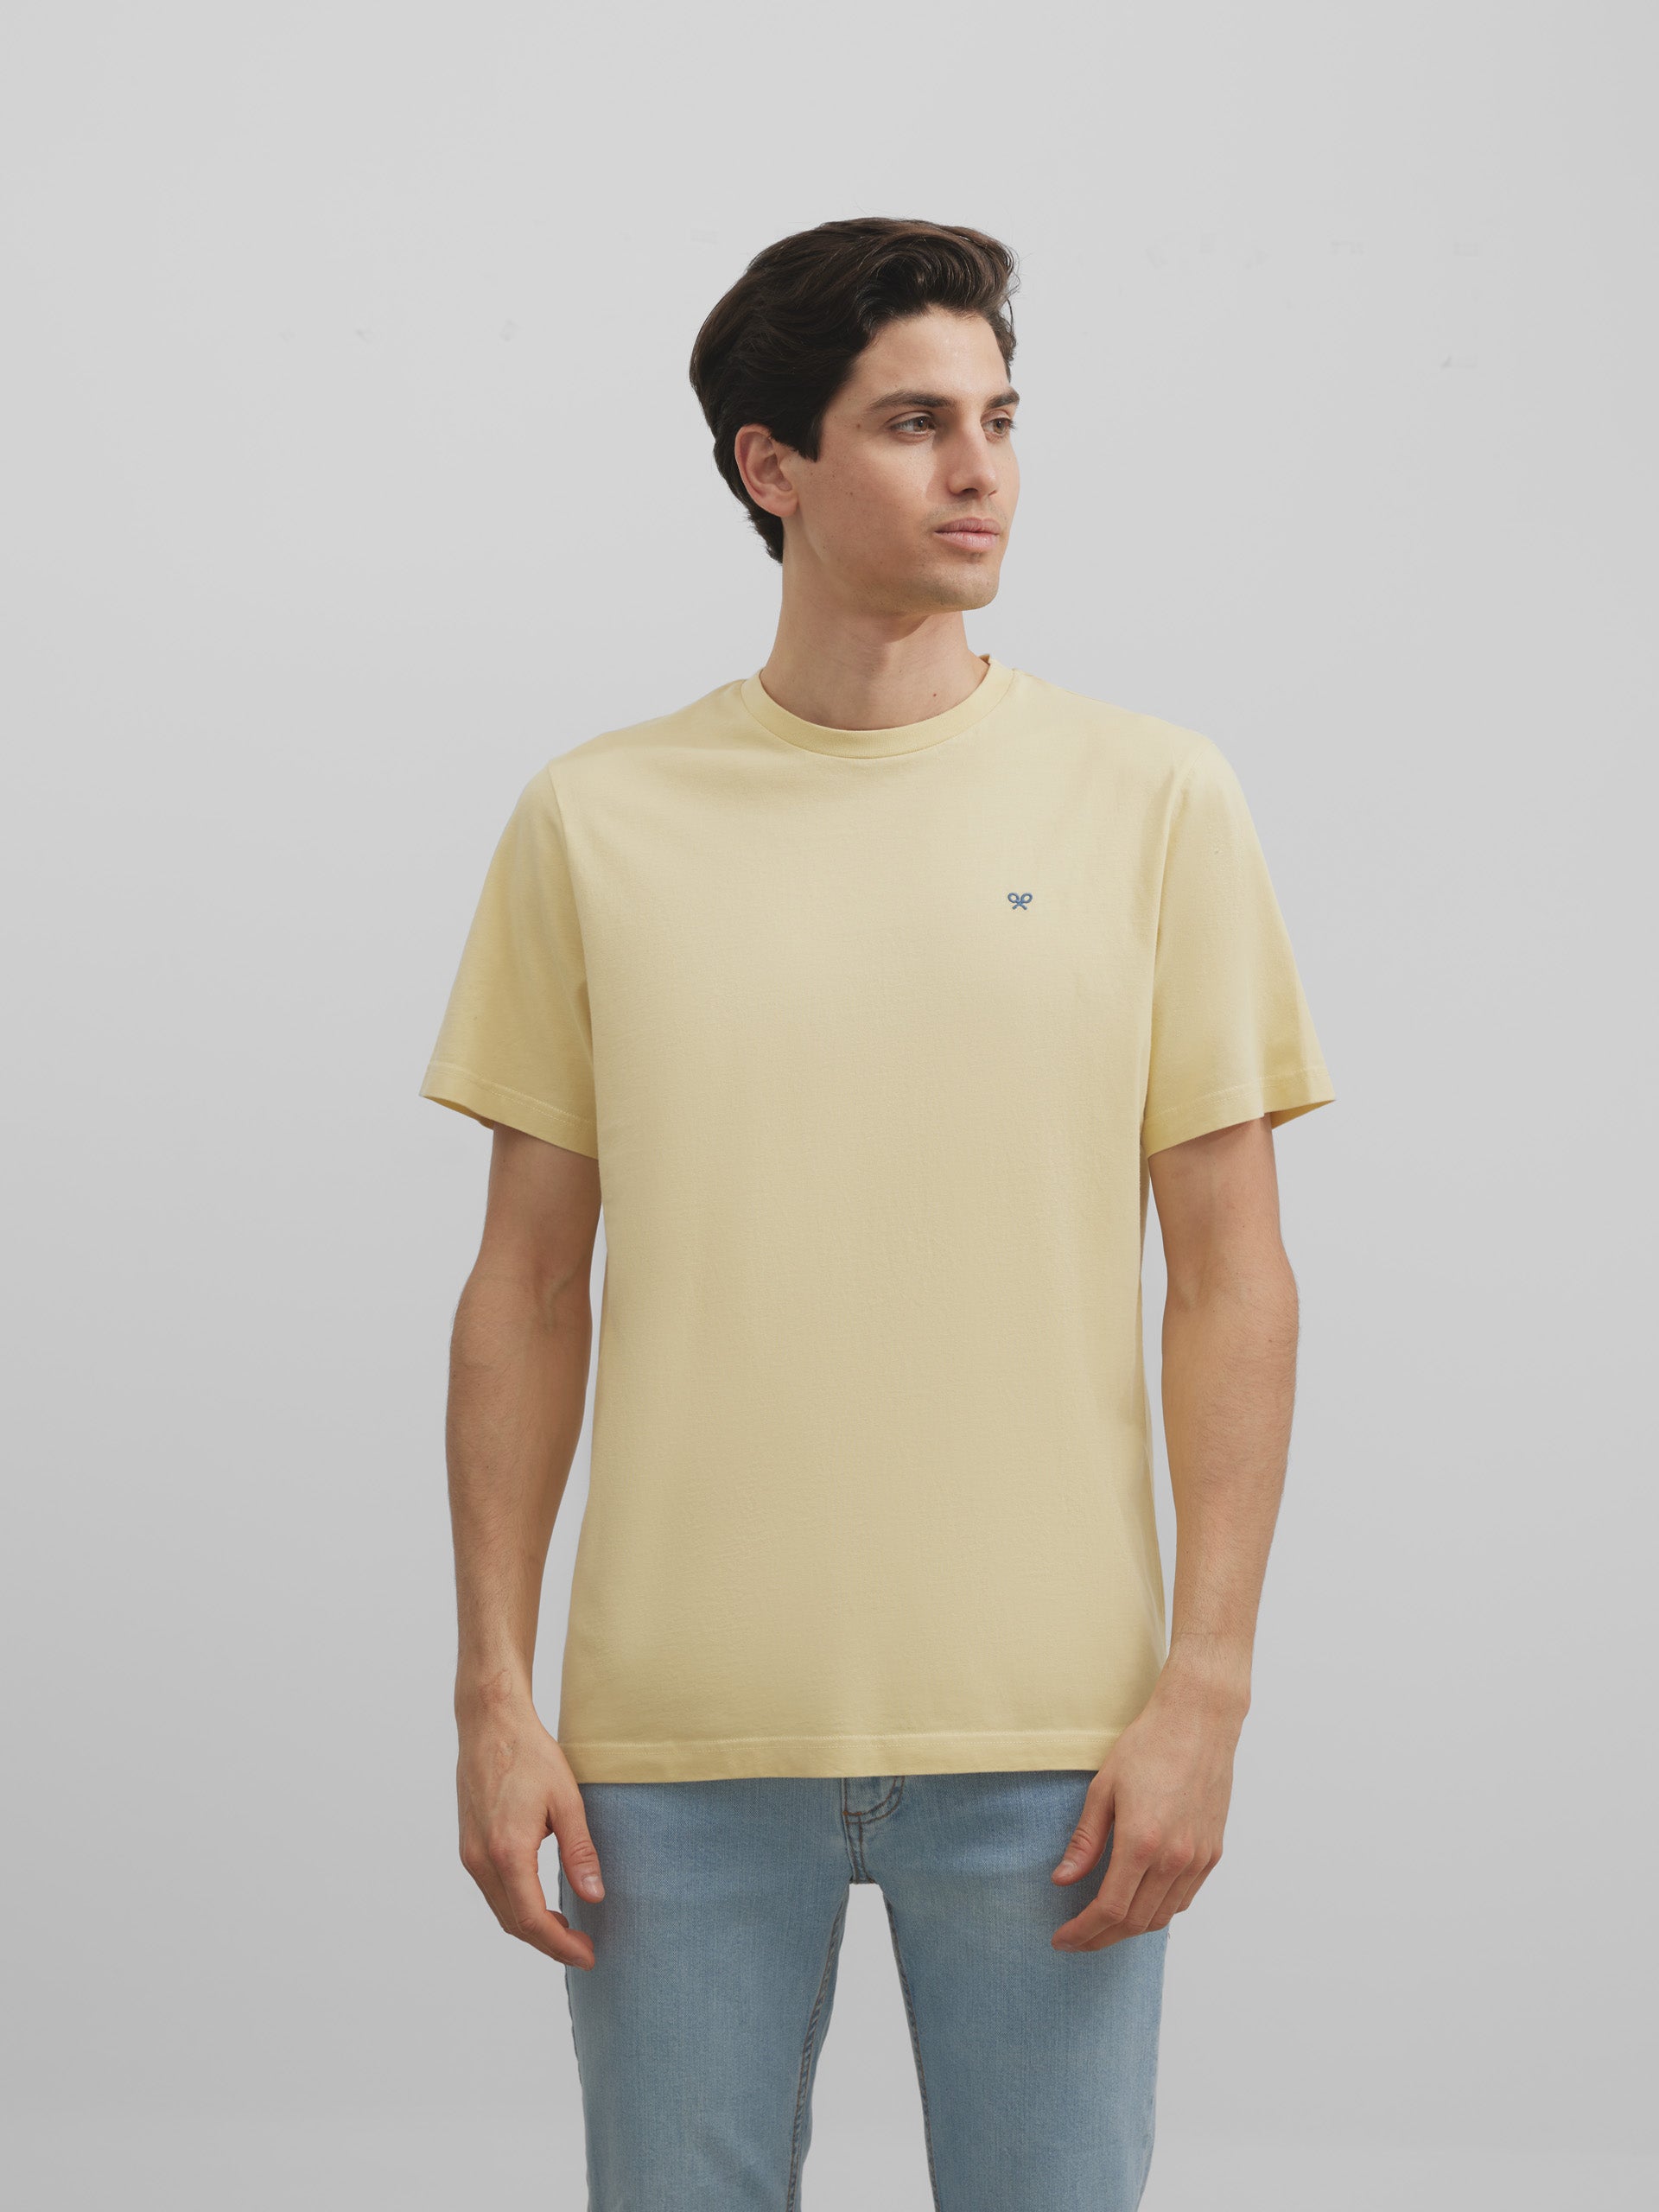 Yellow sun coast t-shirt